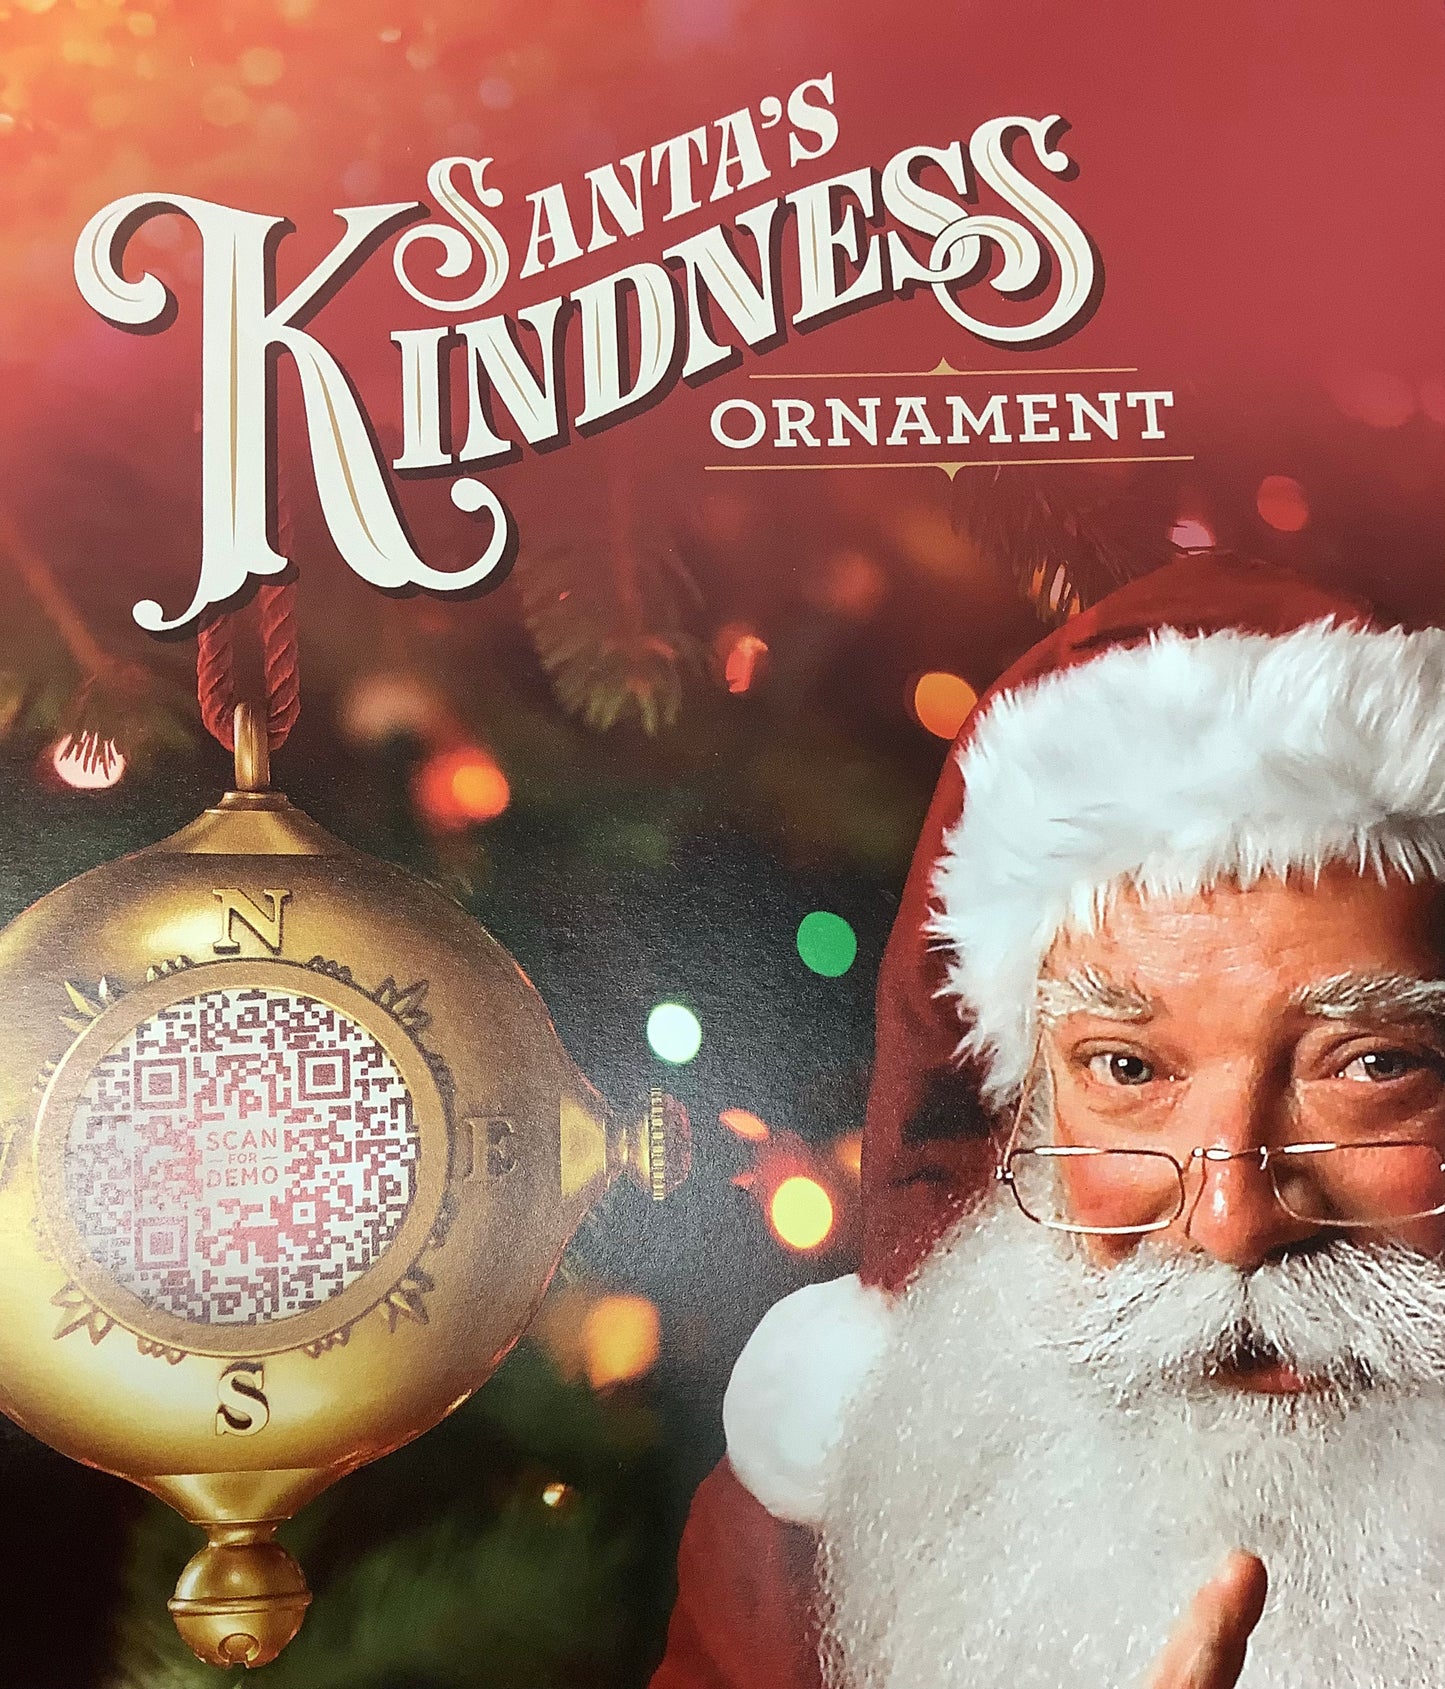 Kindness Ornament